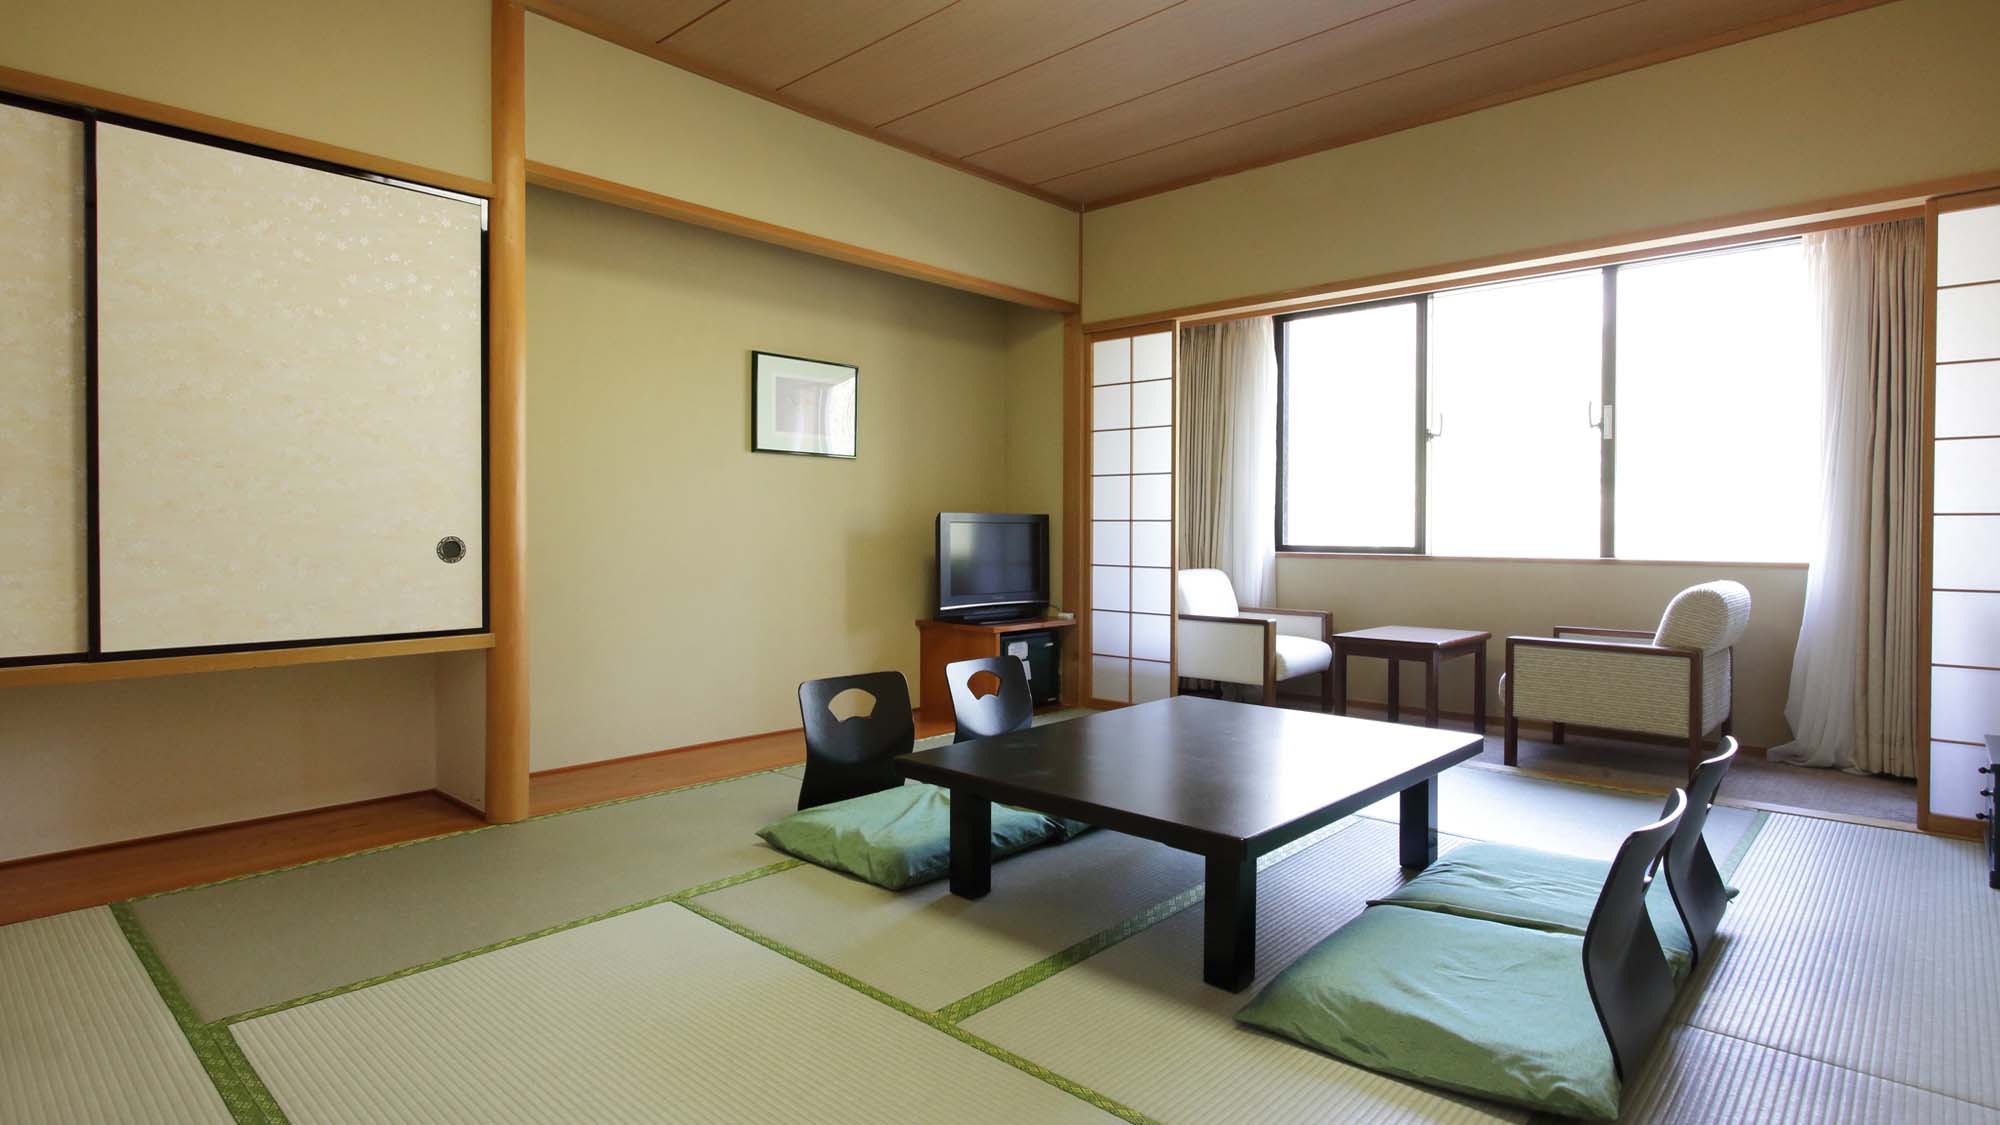 JAPANIESE-STYLE ROOM